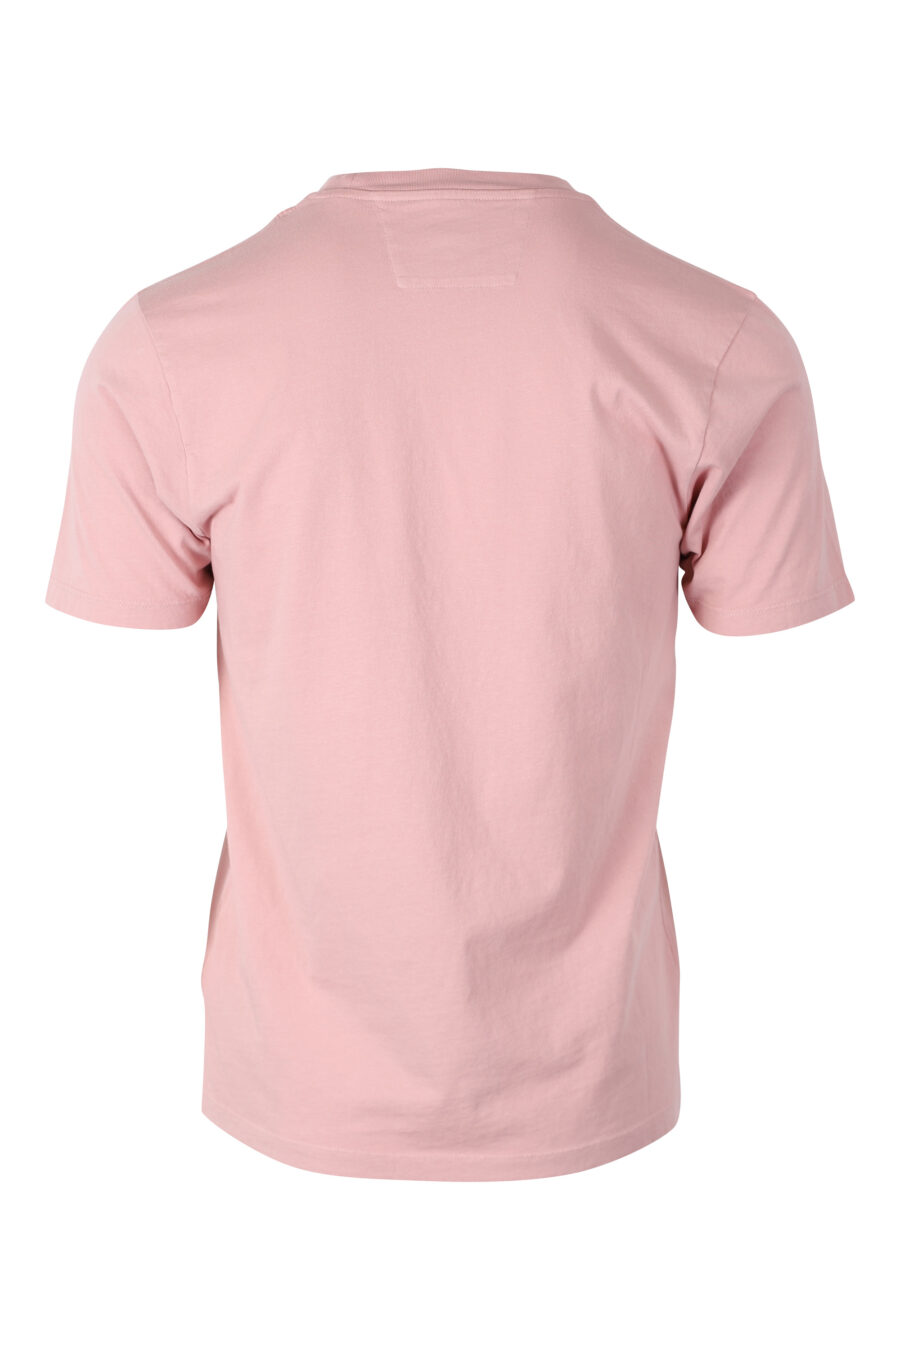 T-shirt cor-de-rosa com maxilogo "spray" - IMG 2403